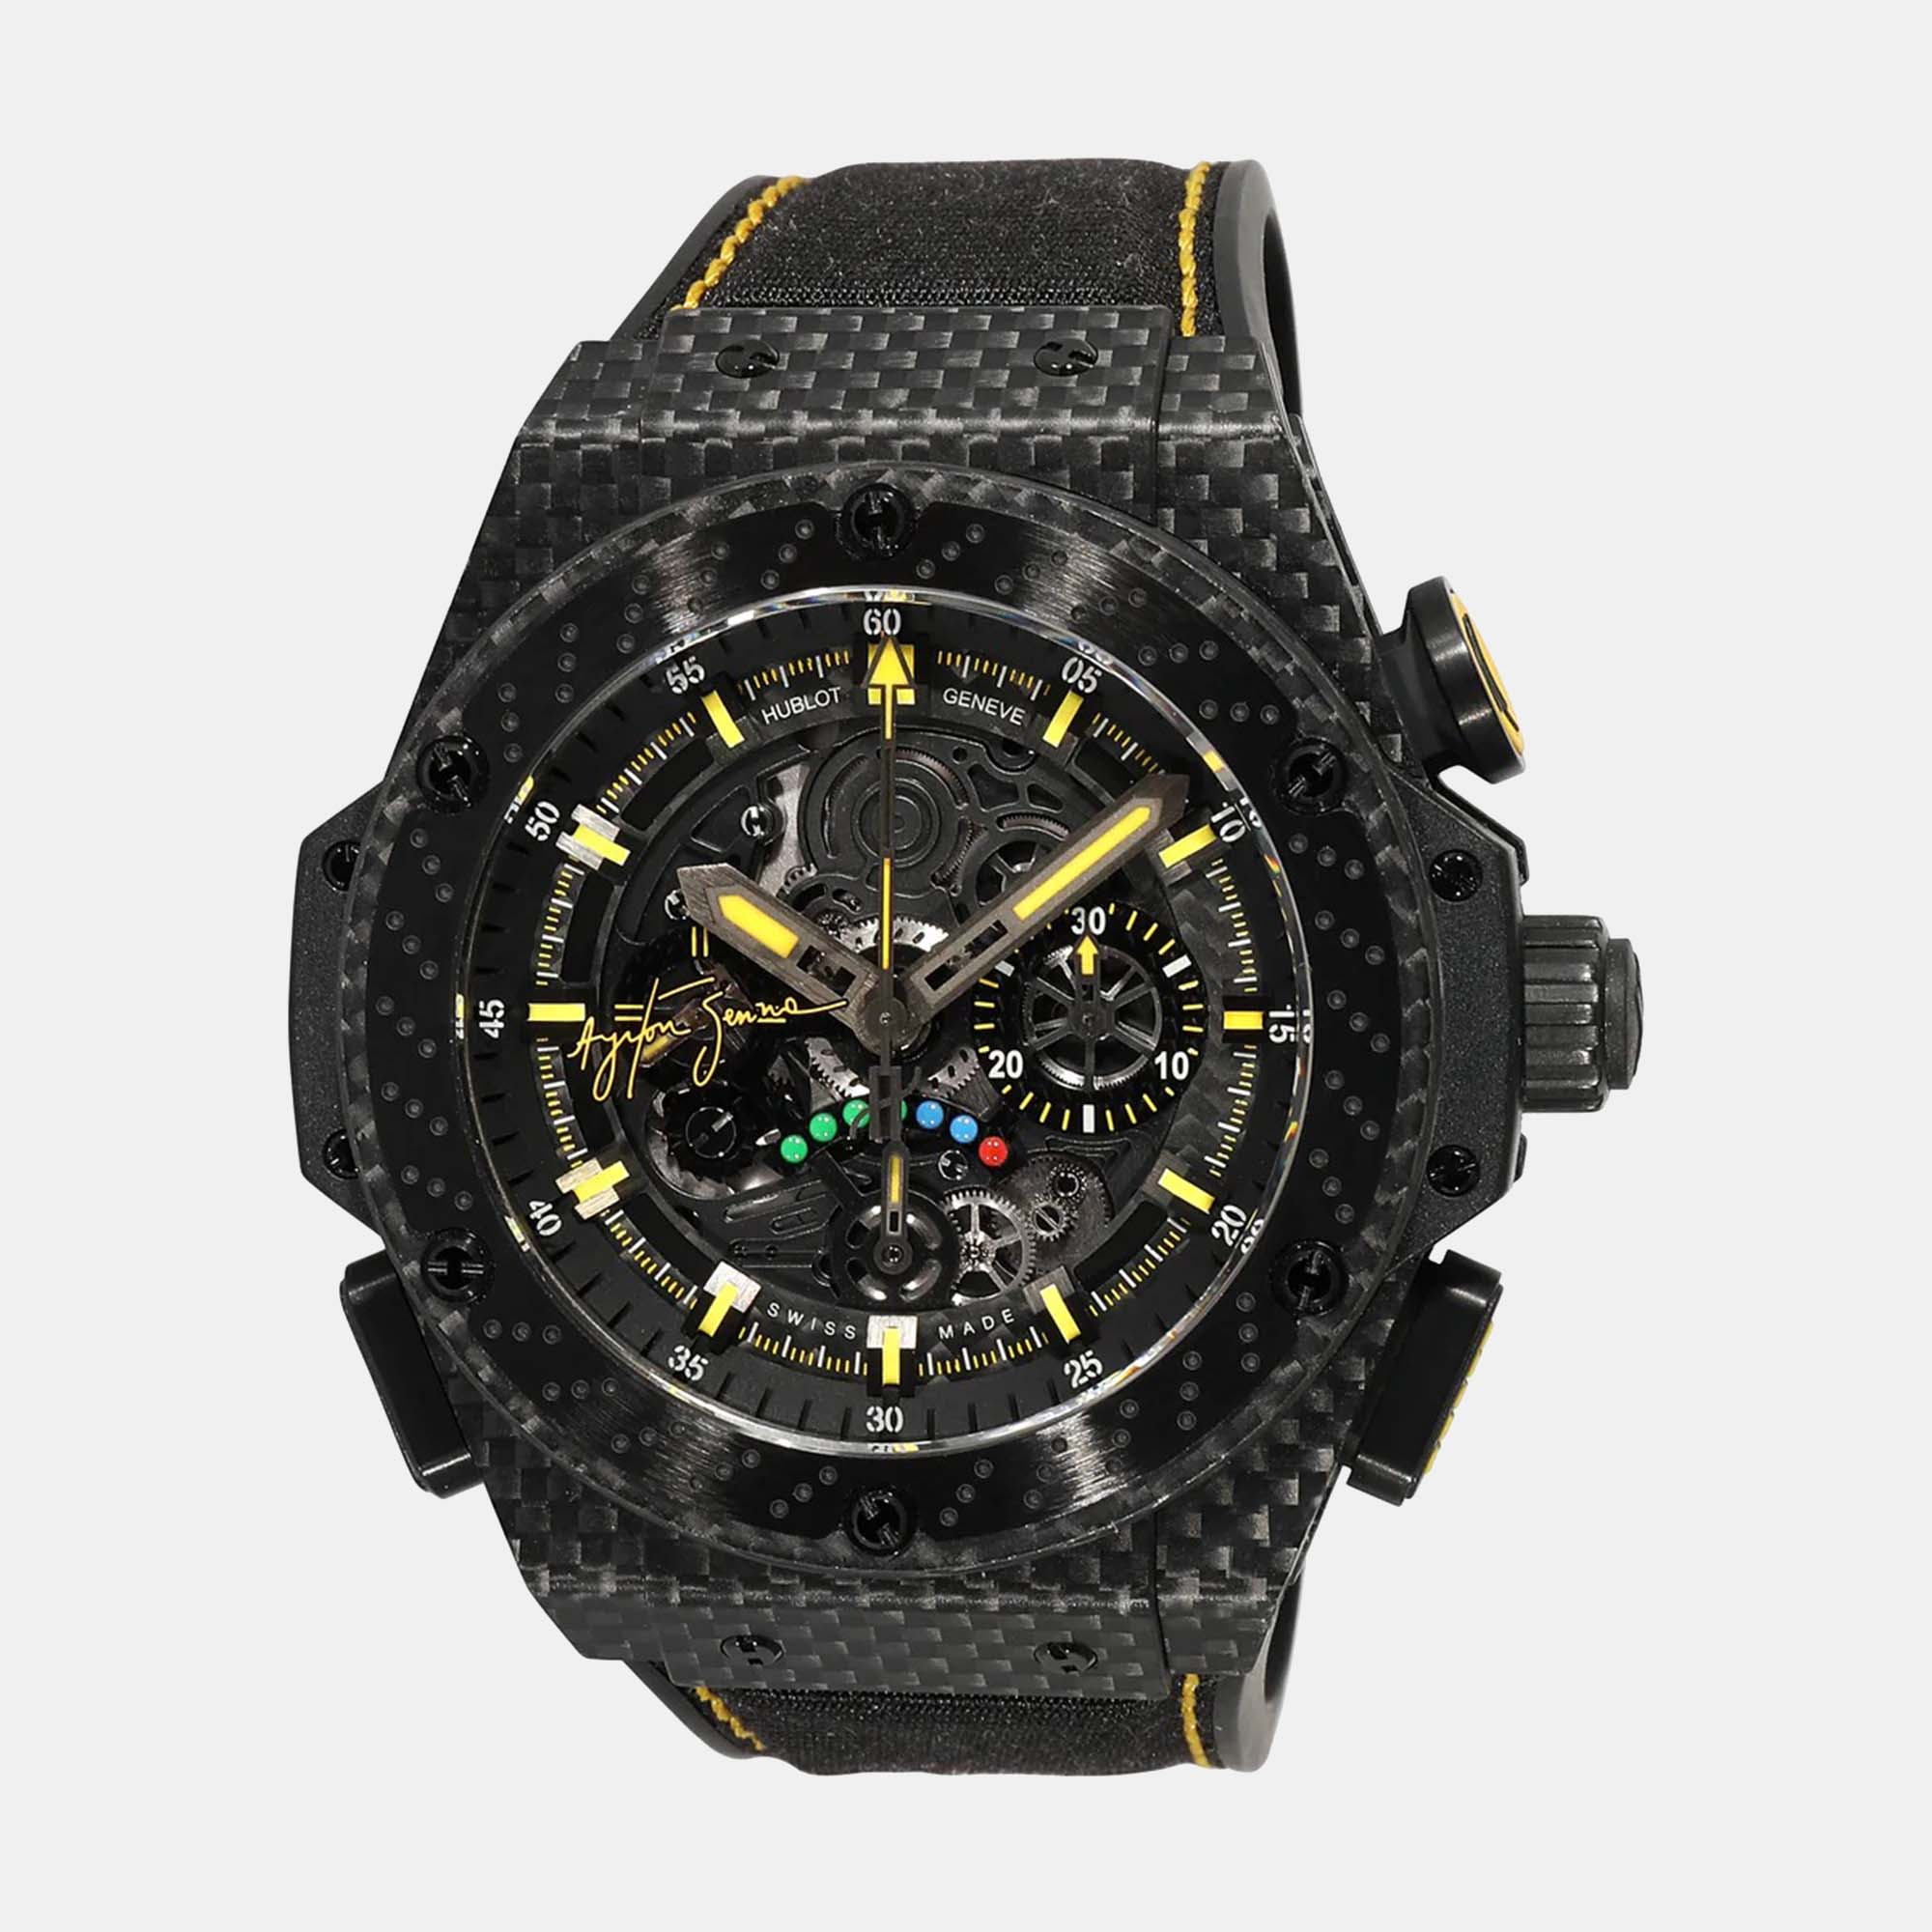 Hublot Black Carbon Fiber King Power 719.QM.1729.NR.AES10 Automatic Men's Wristwatch 48 Mm